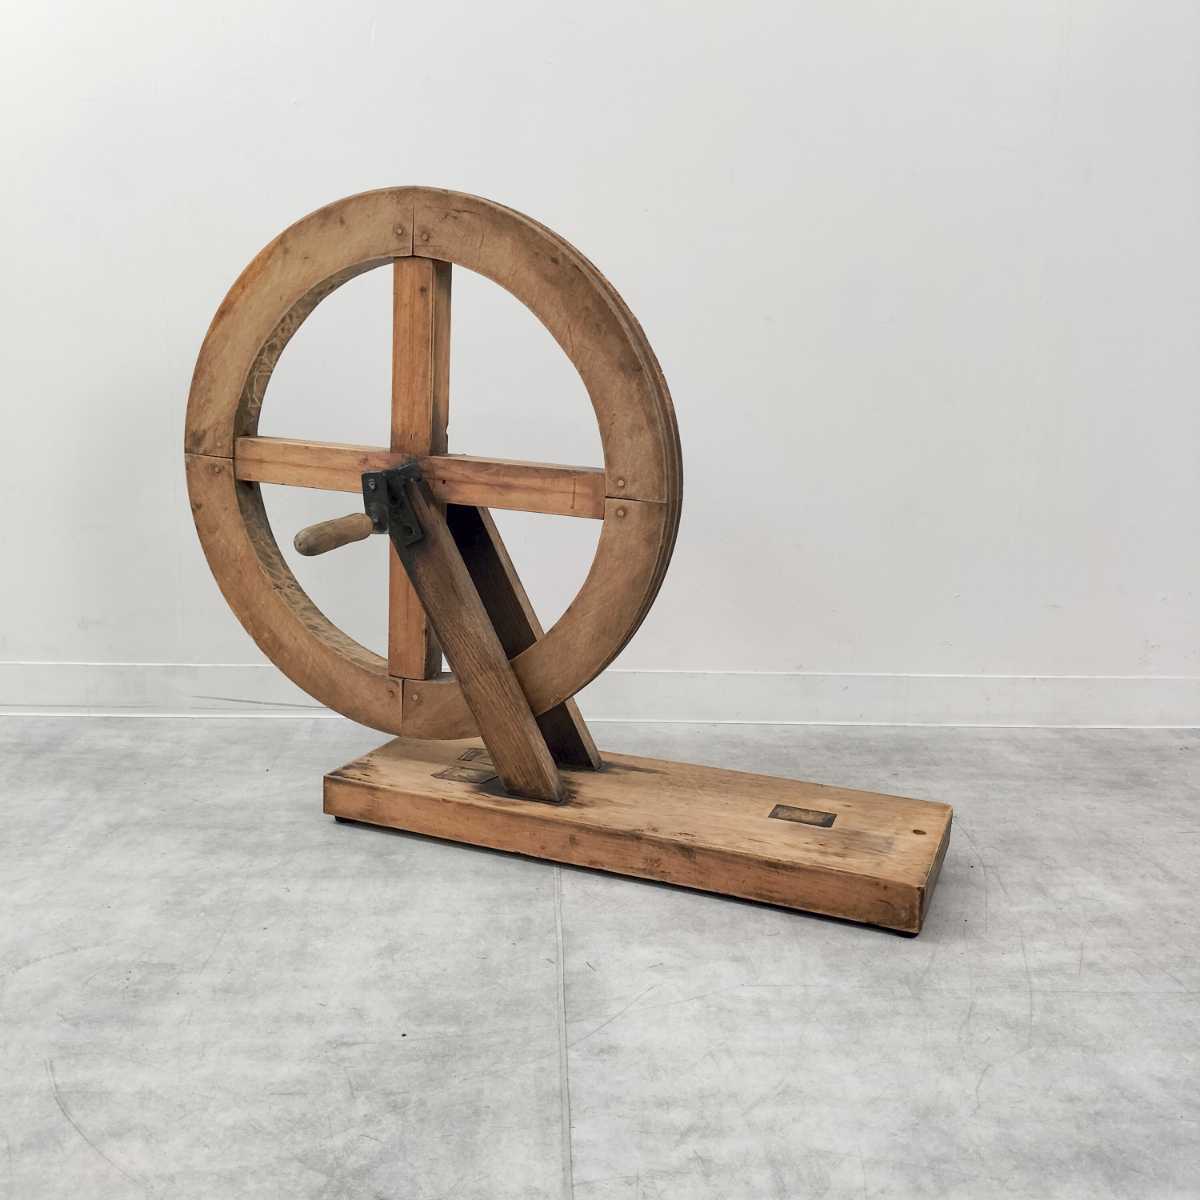 本物の インダストリアル アーティスト作製／ファウンドオブジェ 木の車輪のオブジェ ビンテージ スタジ アンティーク オブジェ オブジェ